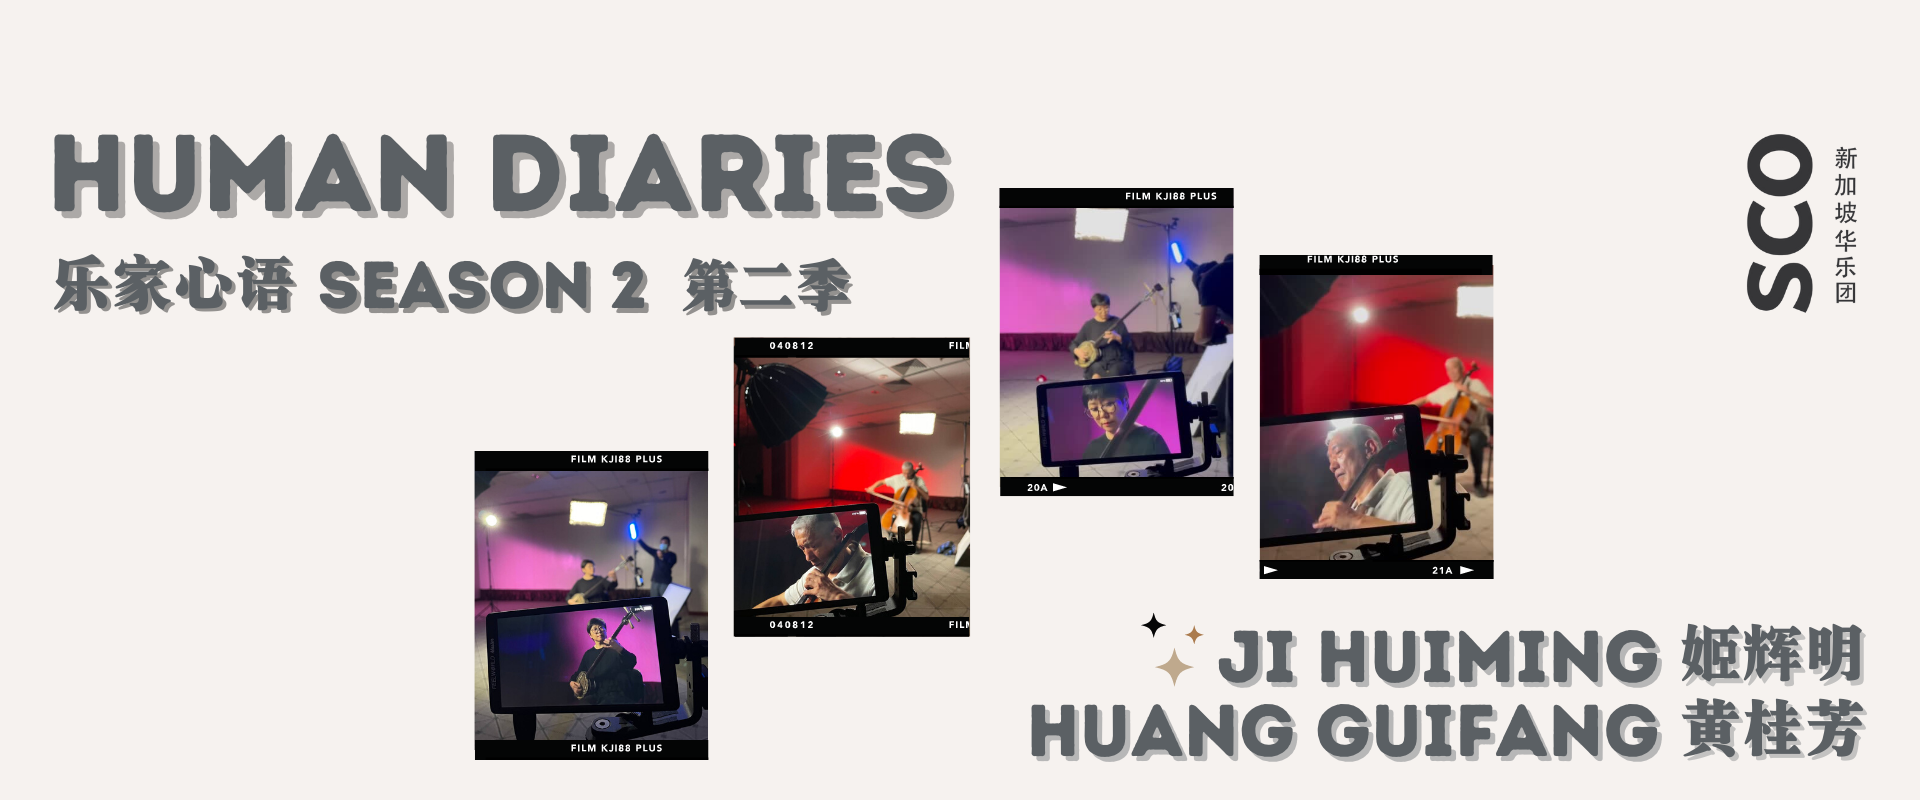 Ji_Huiming__Huang_Guifang Huayue Articles